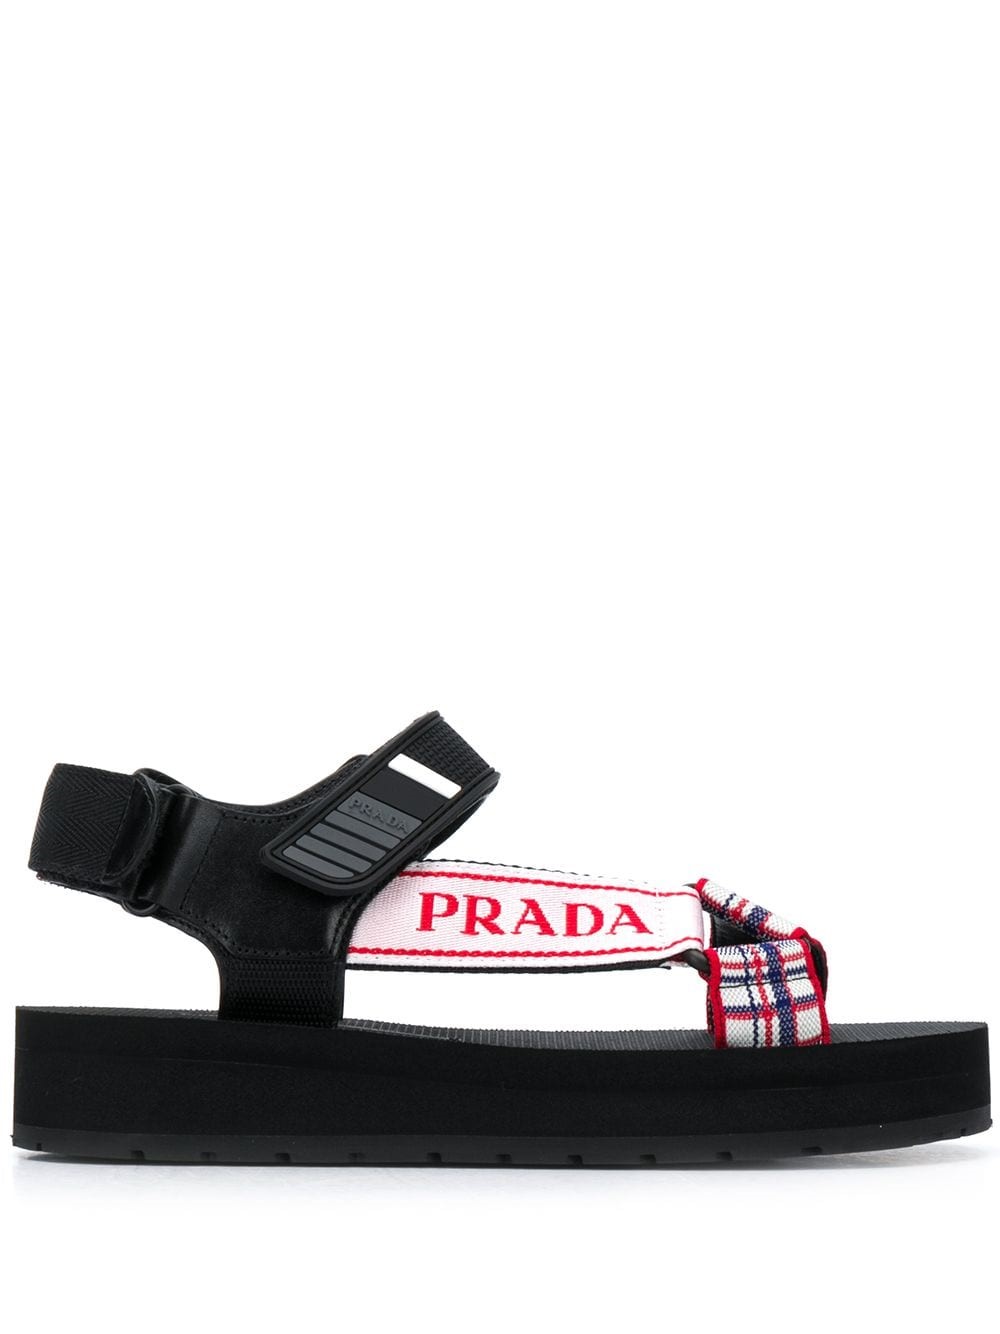 Prada Sandals Discount Sale, UP TO 56% OFF | www.ldeventos.com